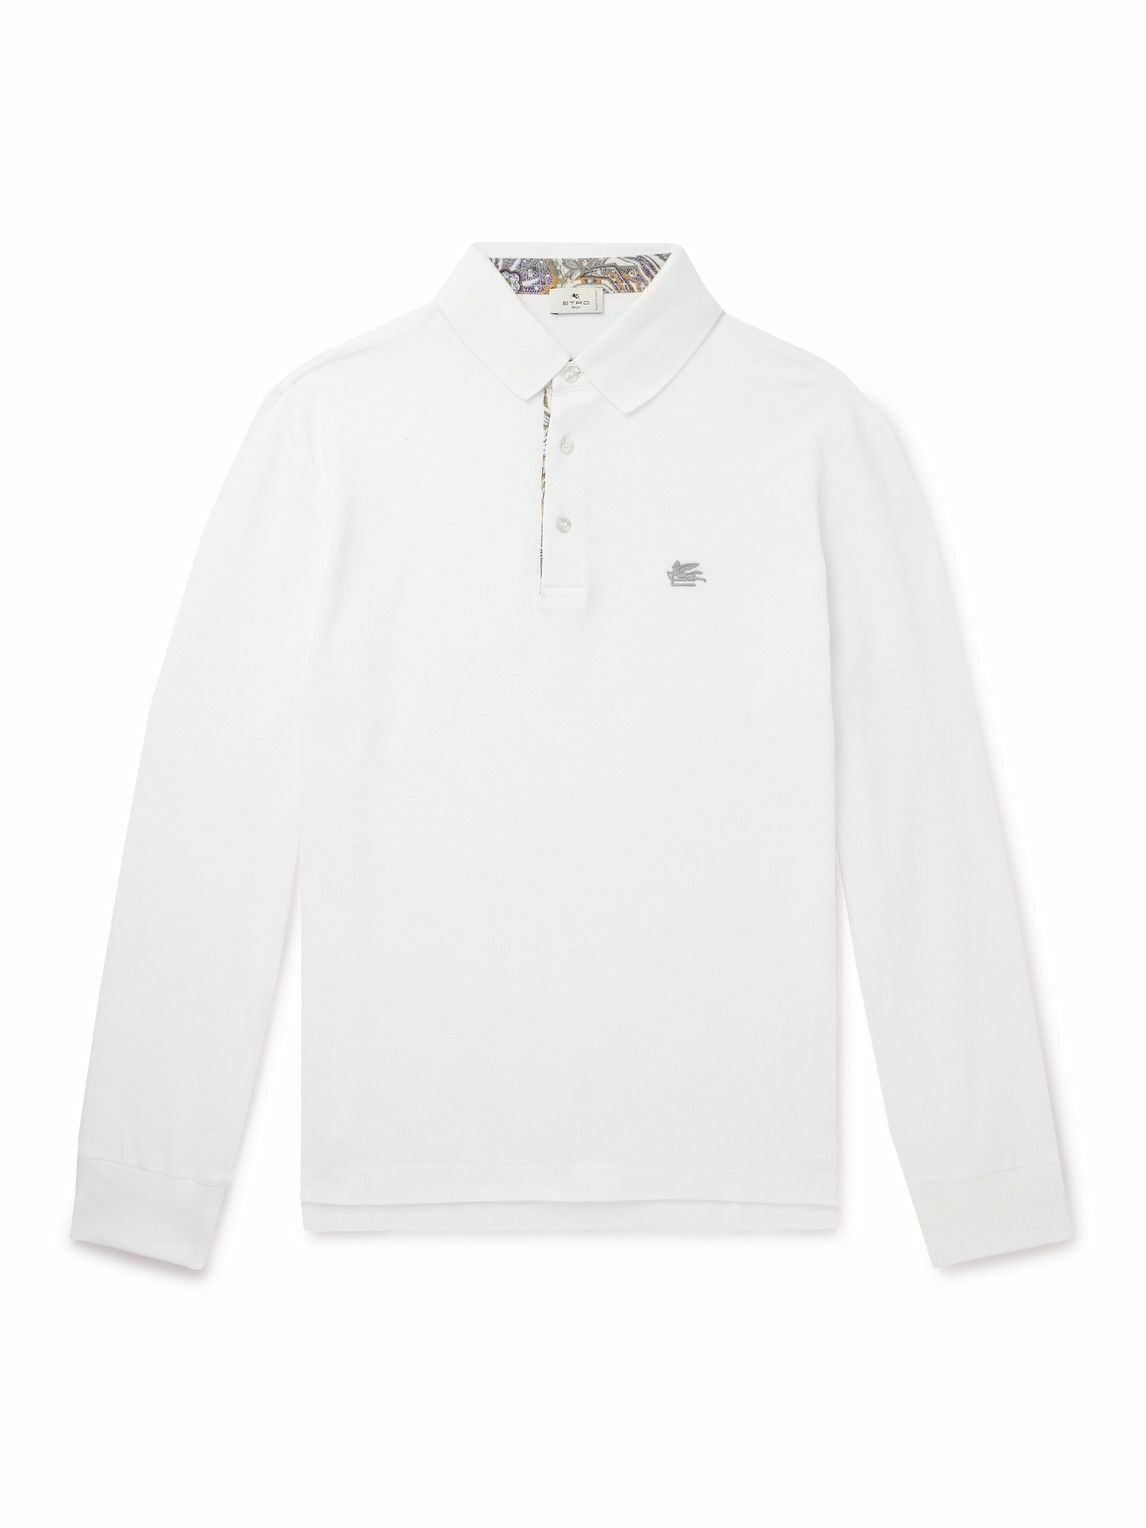 Etro - Logo-Embroidered Cotton-Piqué Polo Shirt - White Etro